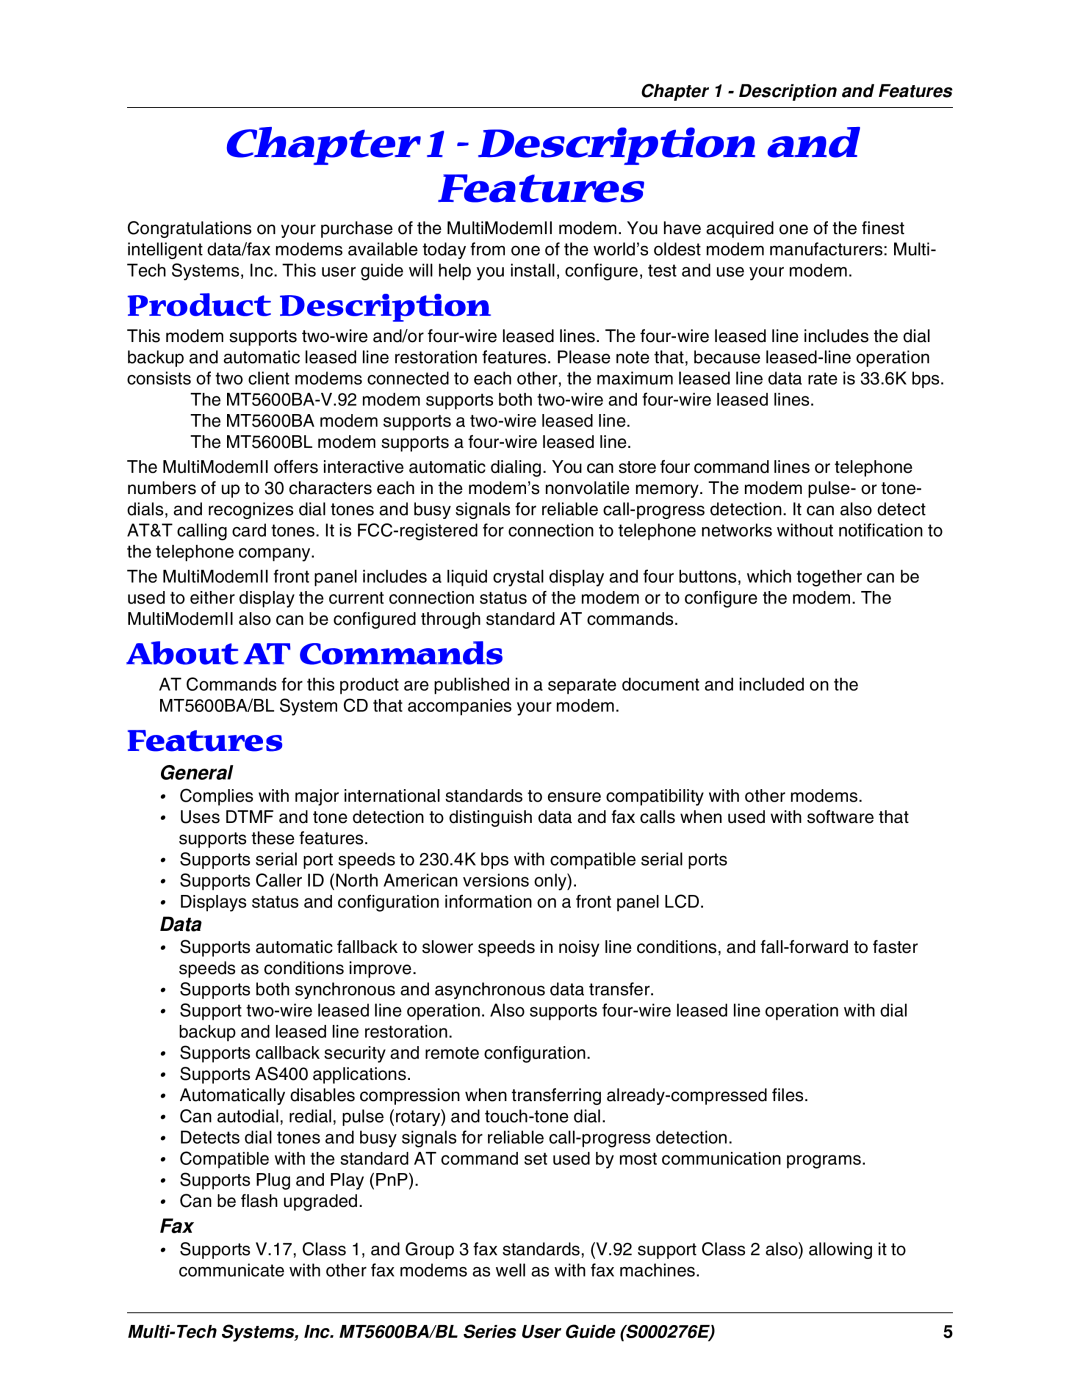 Multitech MT5600BA, MT5600BL manual Description and Features, Product Description, About AT Commands, General, Data 